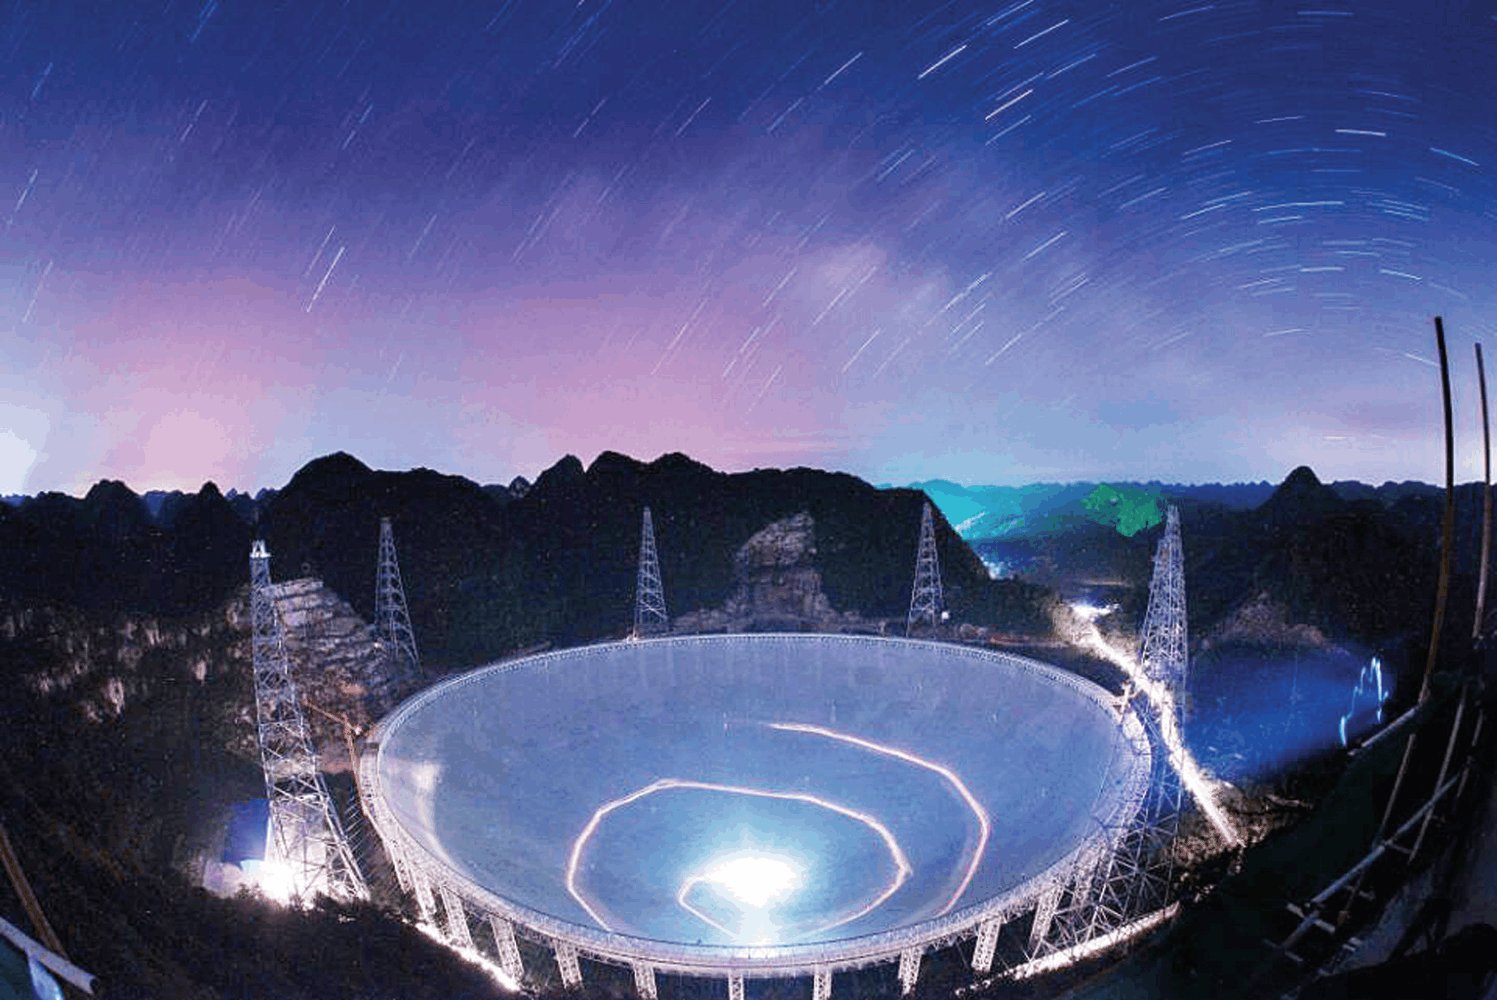 中国天眼找到55颗新脉冲星 有望绘早期宇宙图景